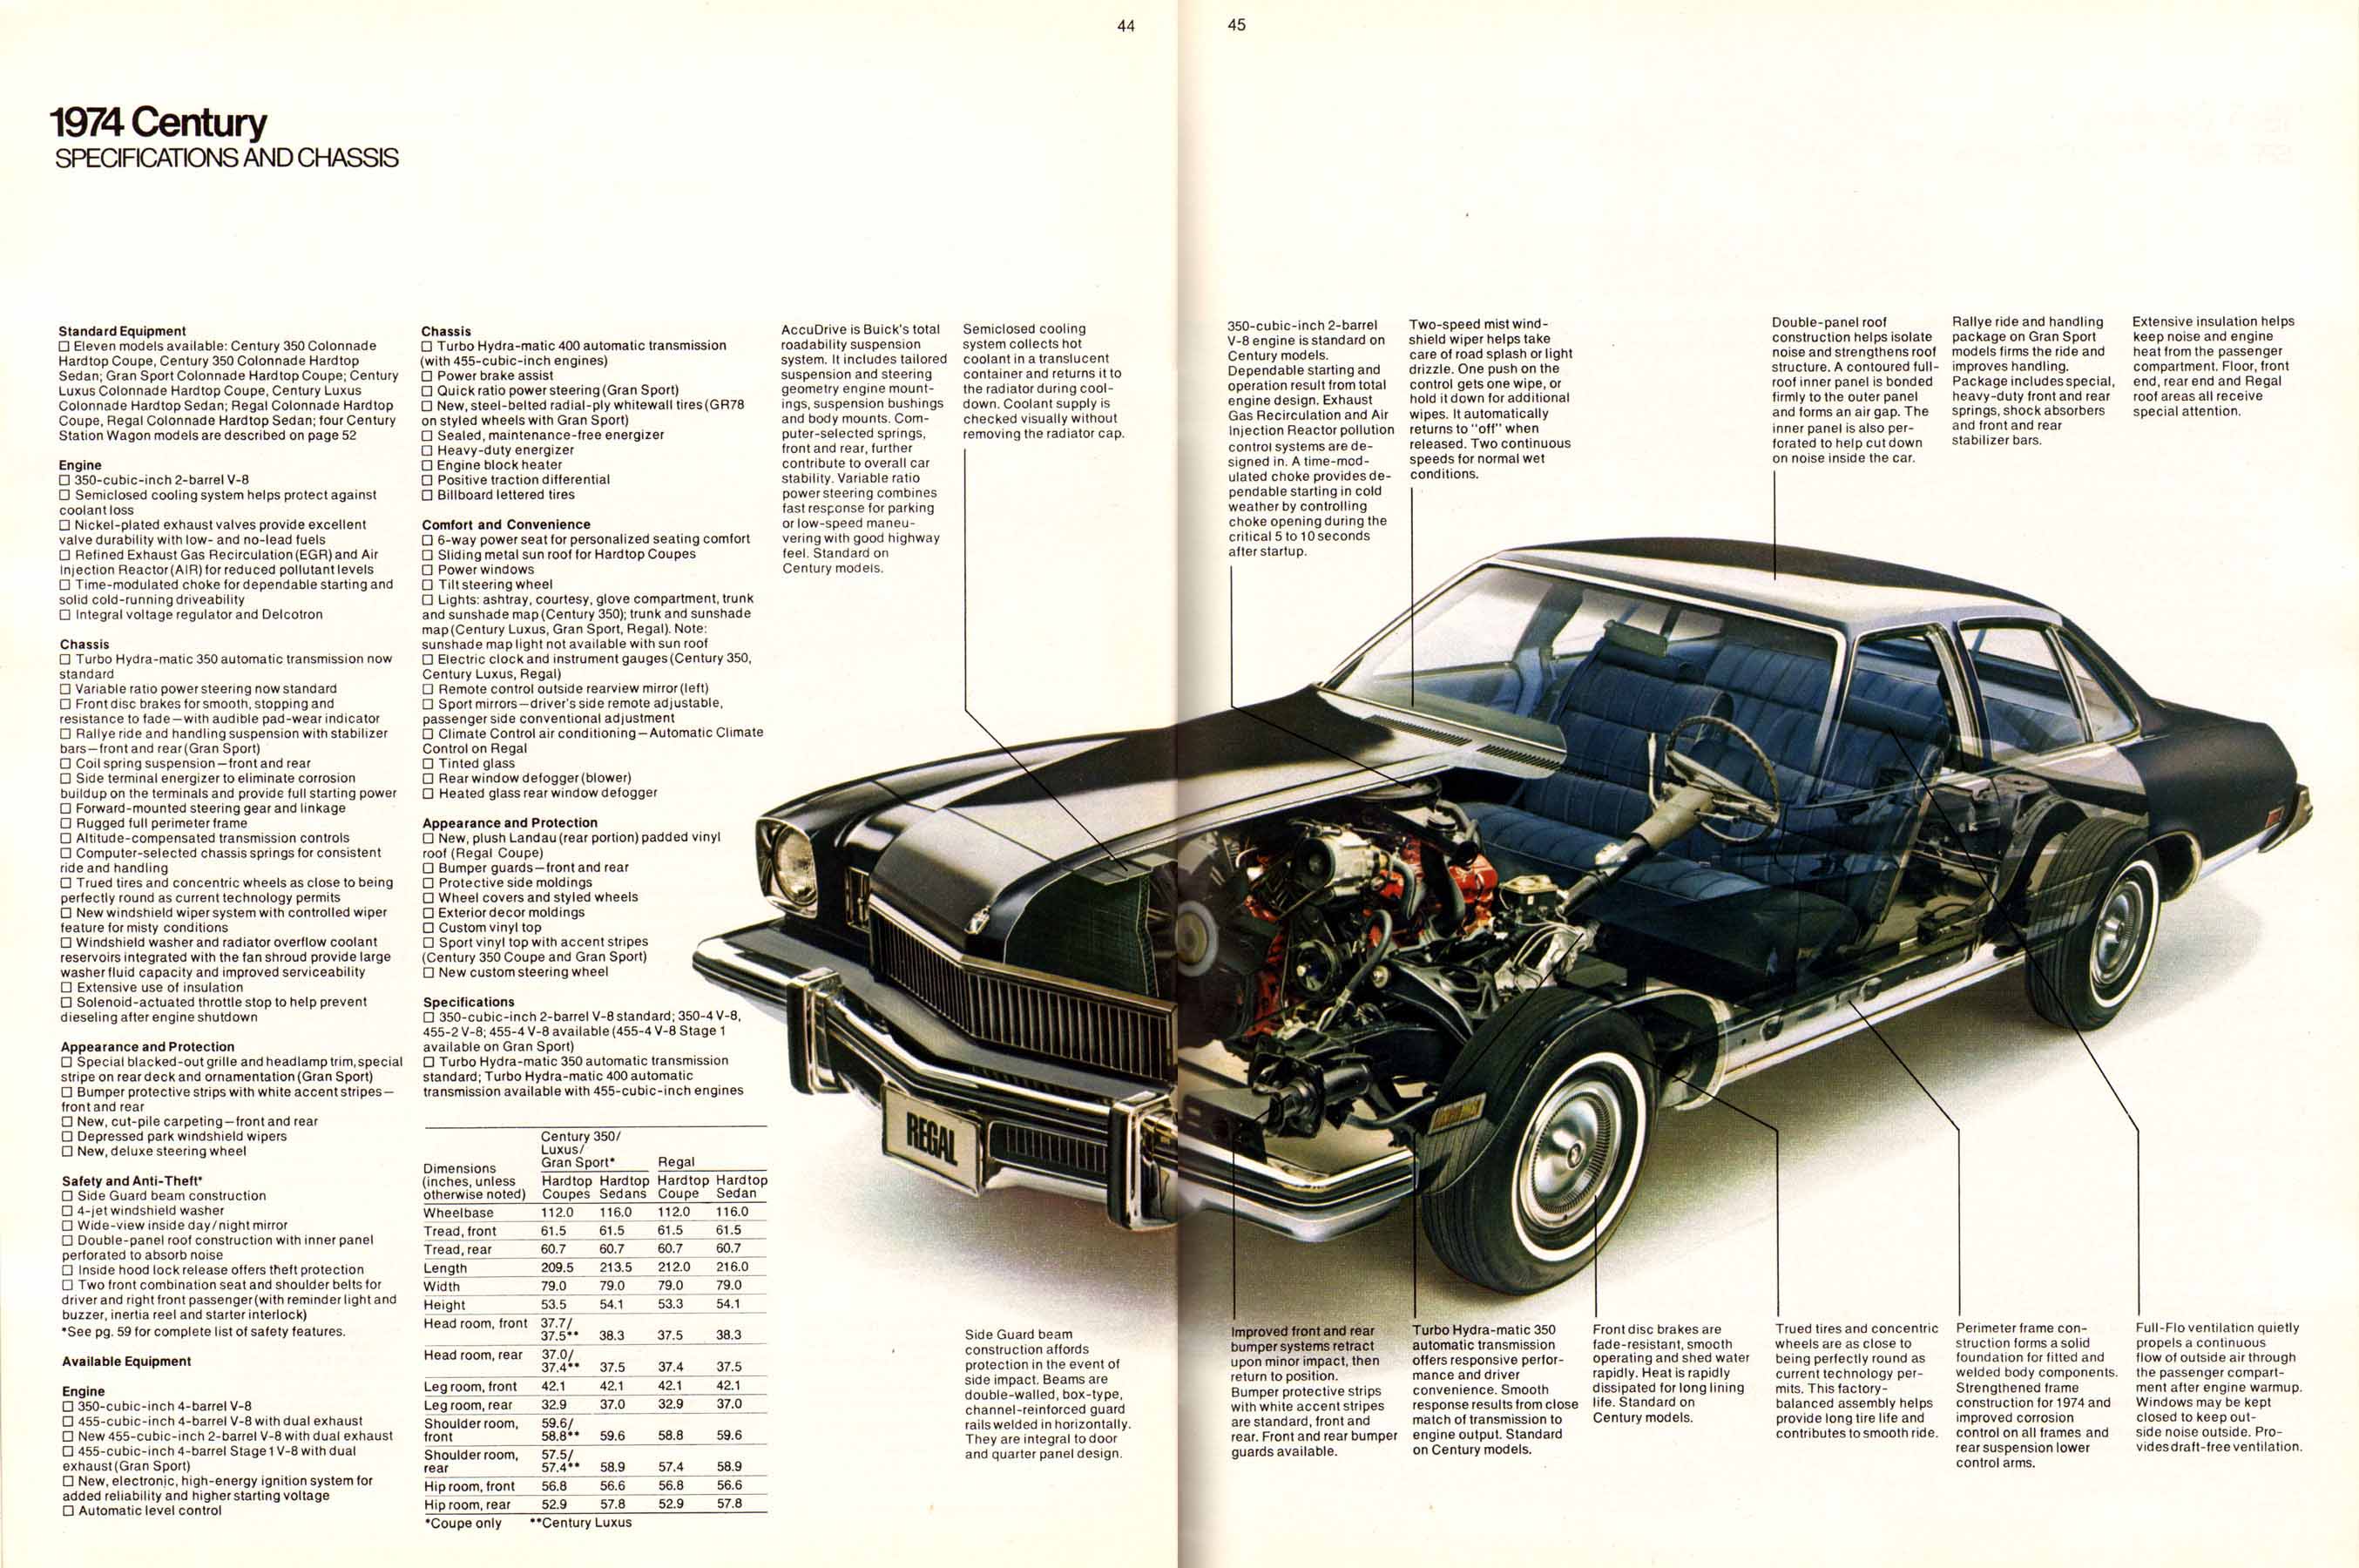 1974 Buick Full Line-44-45